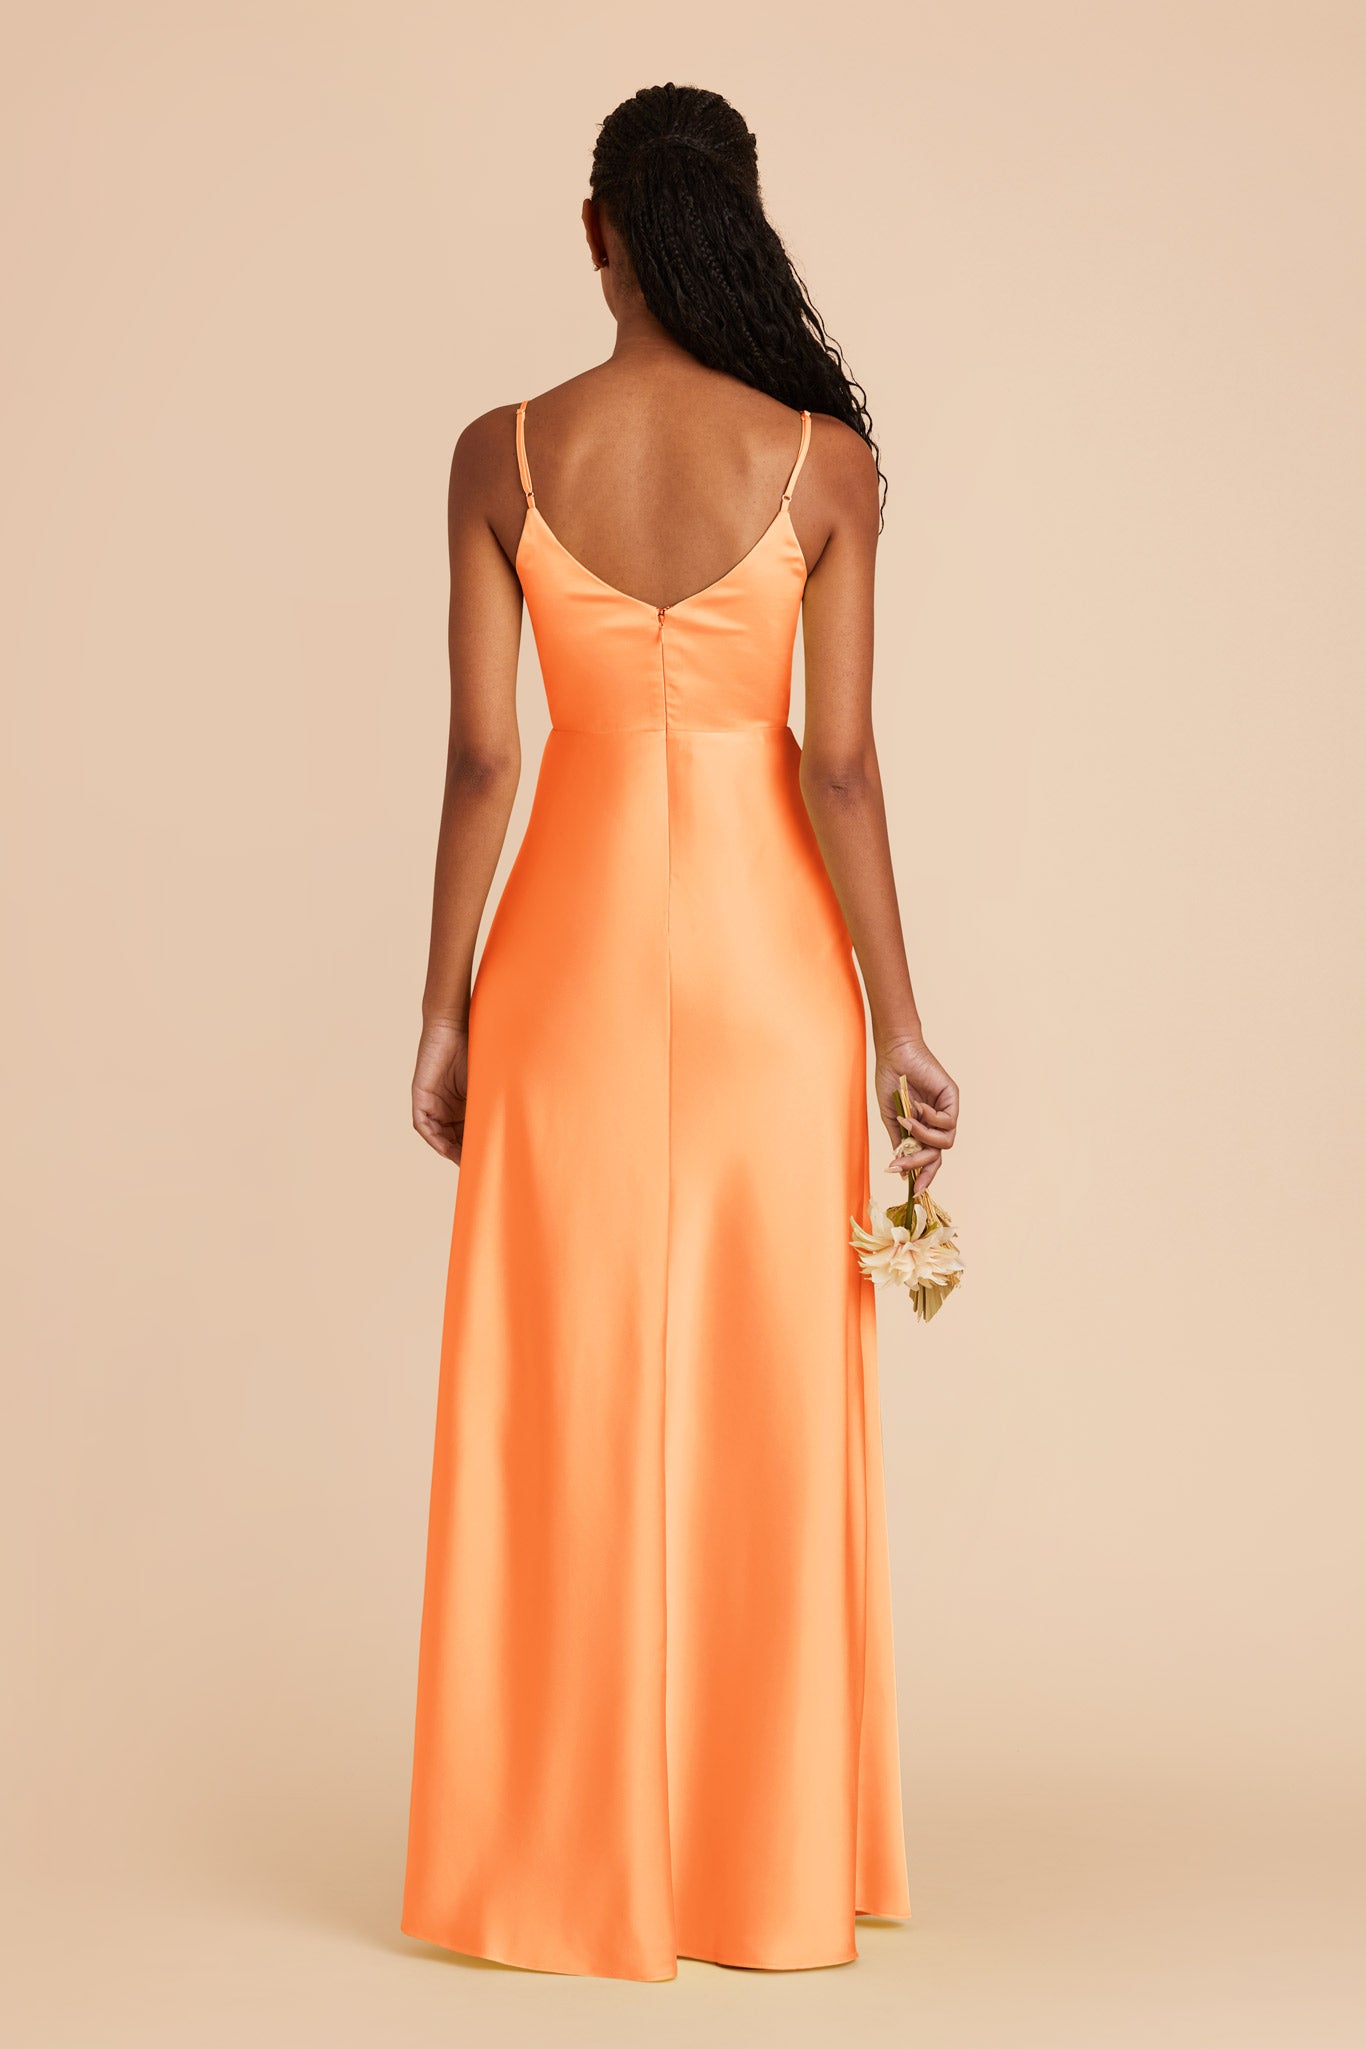 Apricot Jay Matte Satin Dress by Birdy Grey